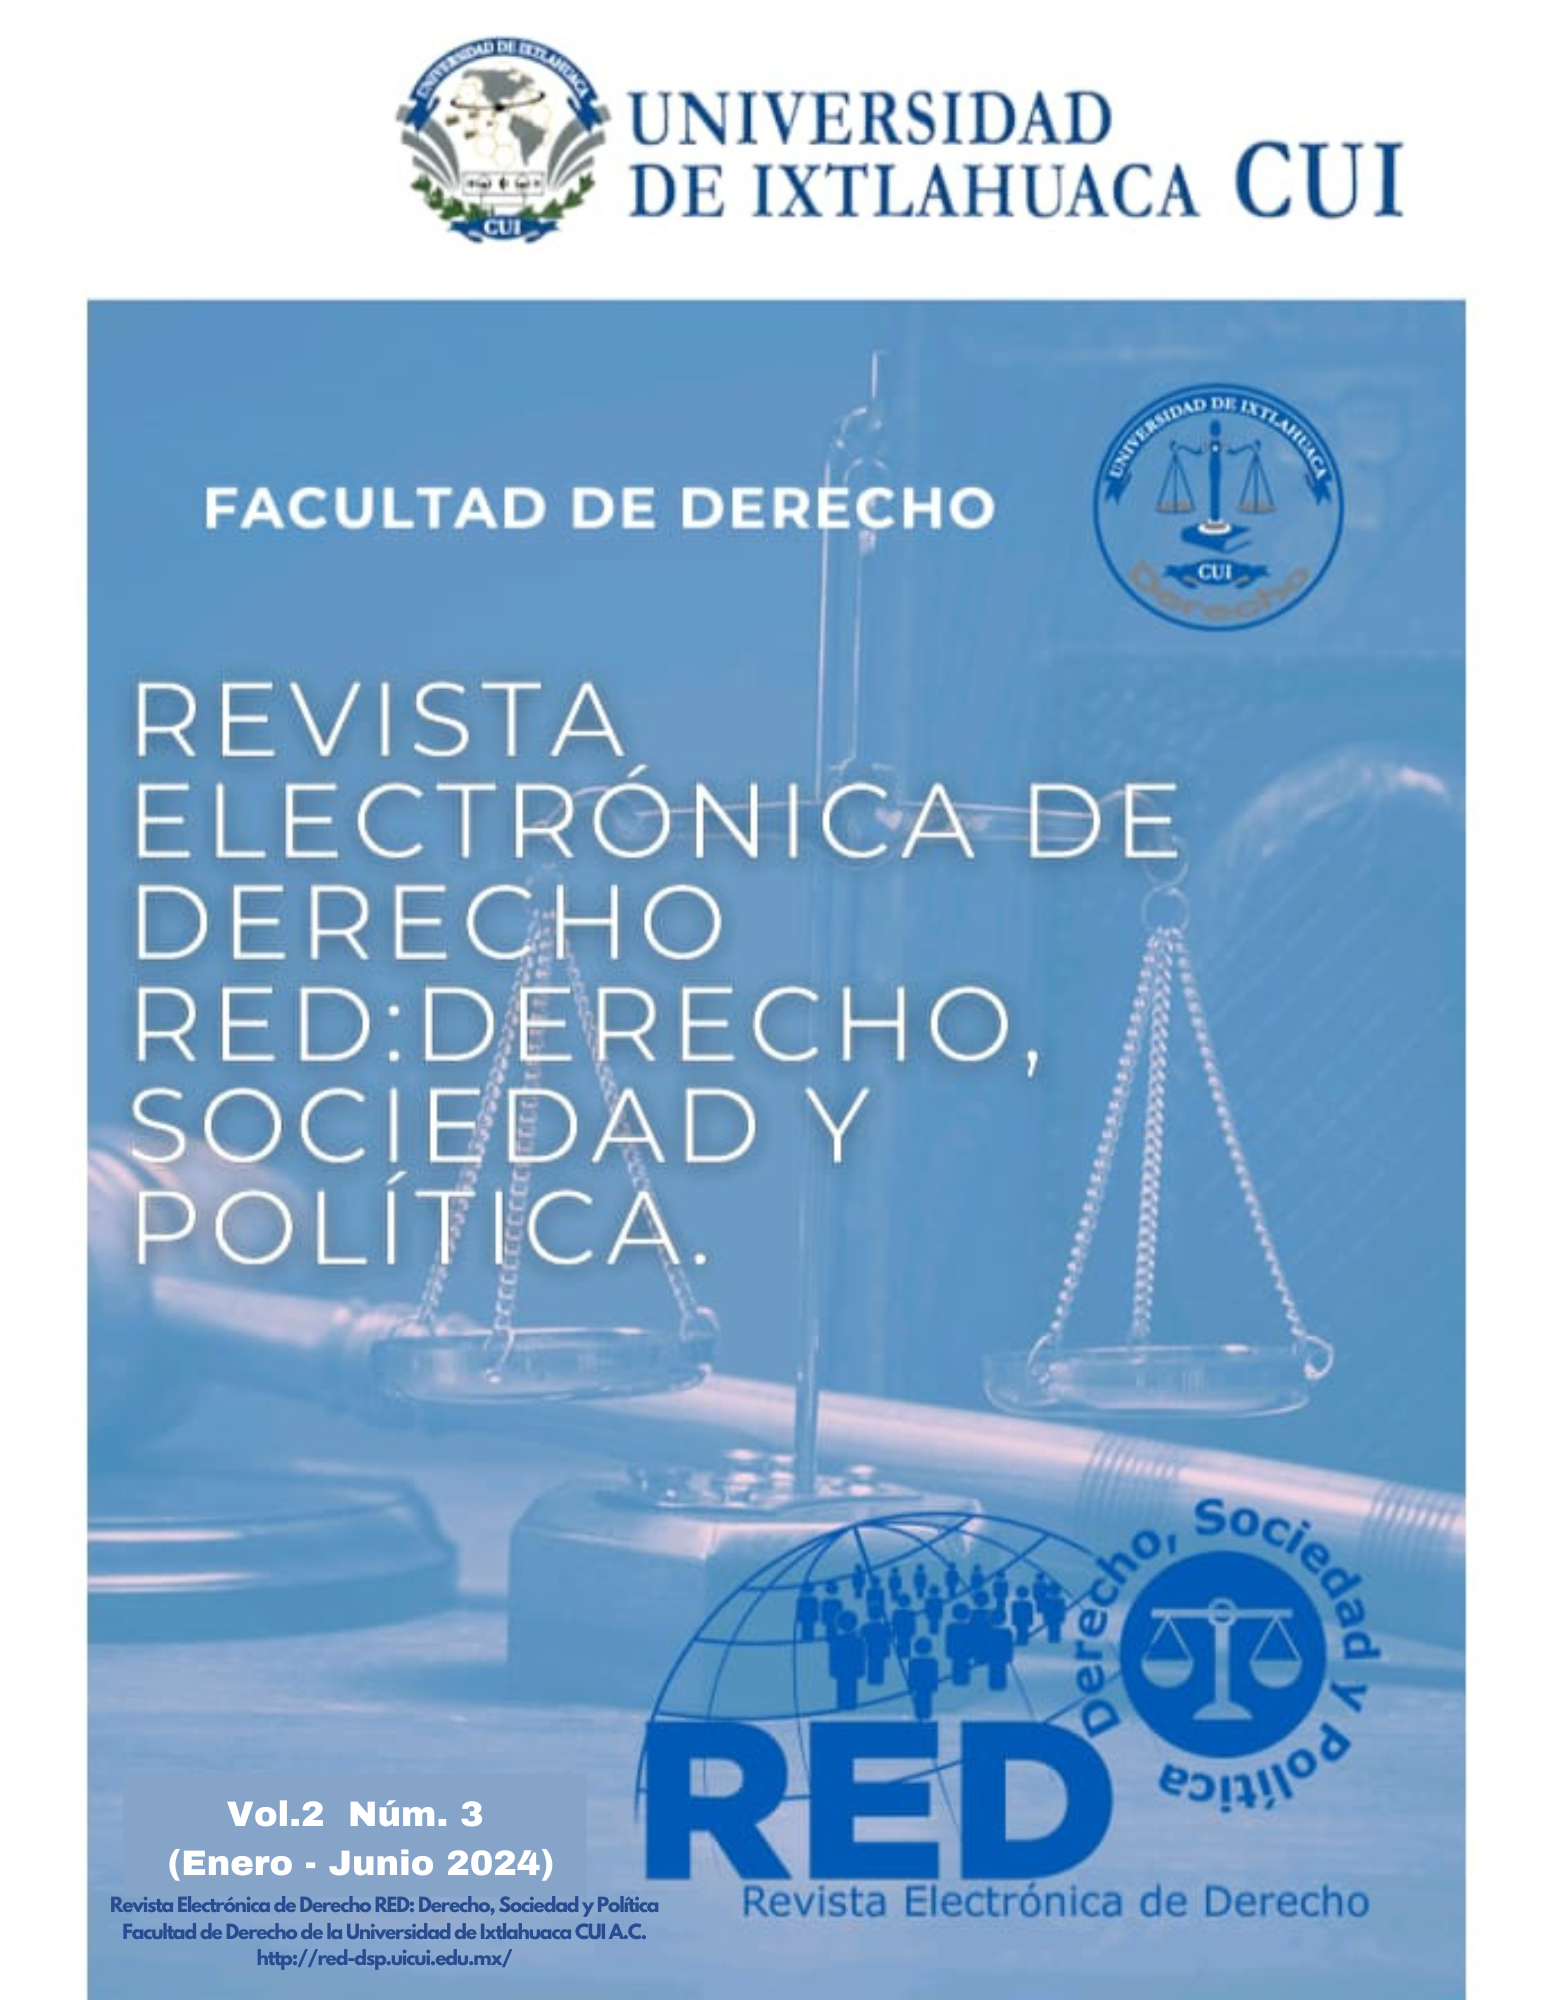 					Ver Vol. 2 Núm. 3 (2024): Revista Electrónica de Derecho RED: Derecho Sociedad y Política
				